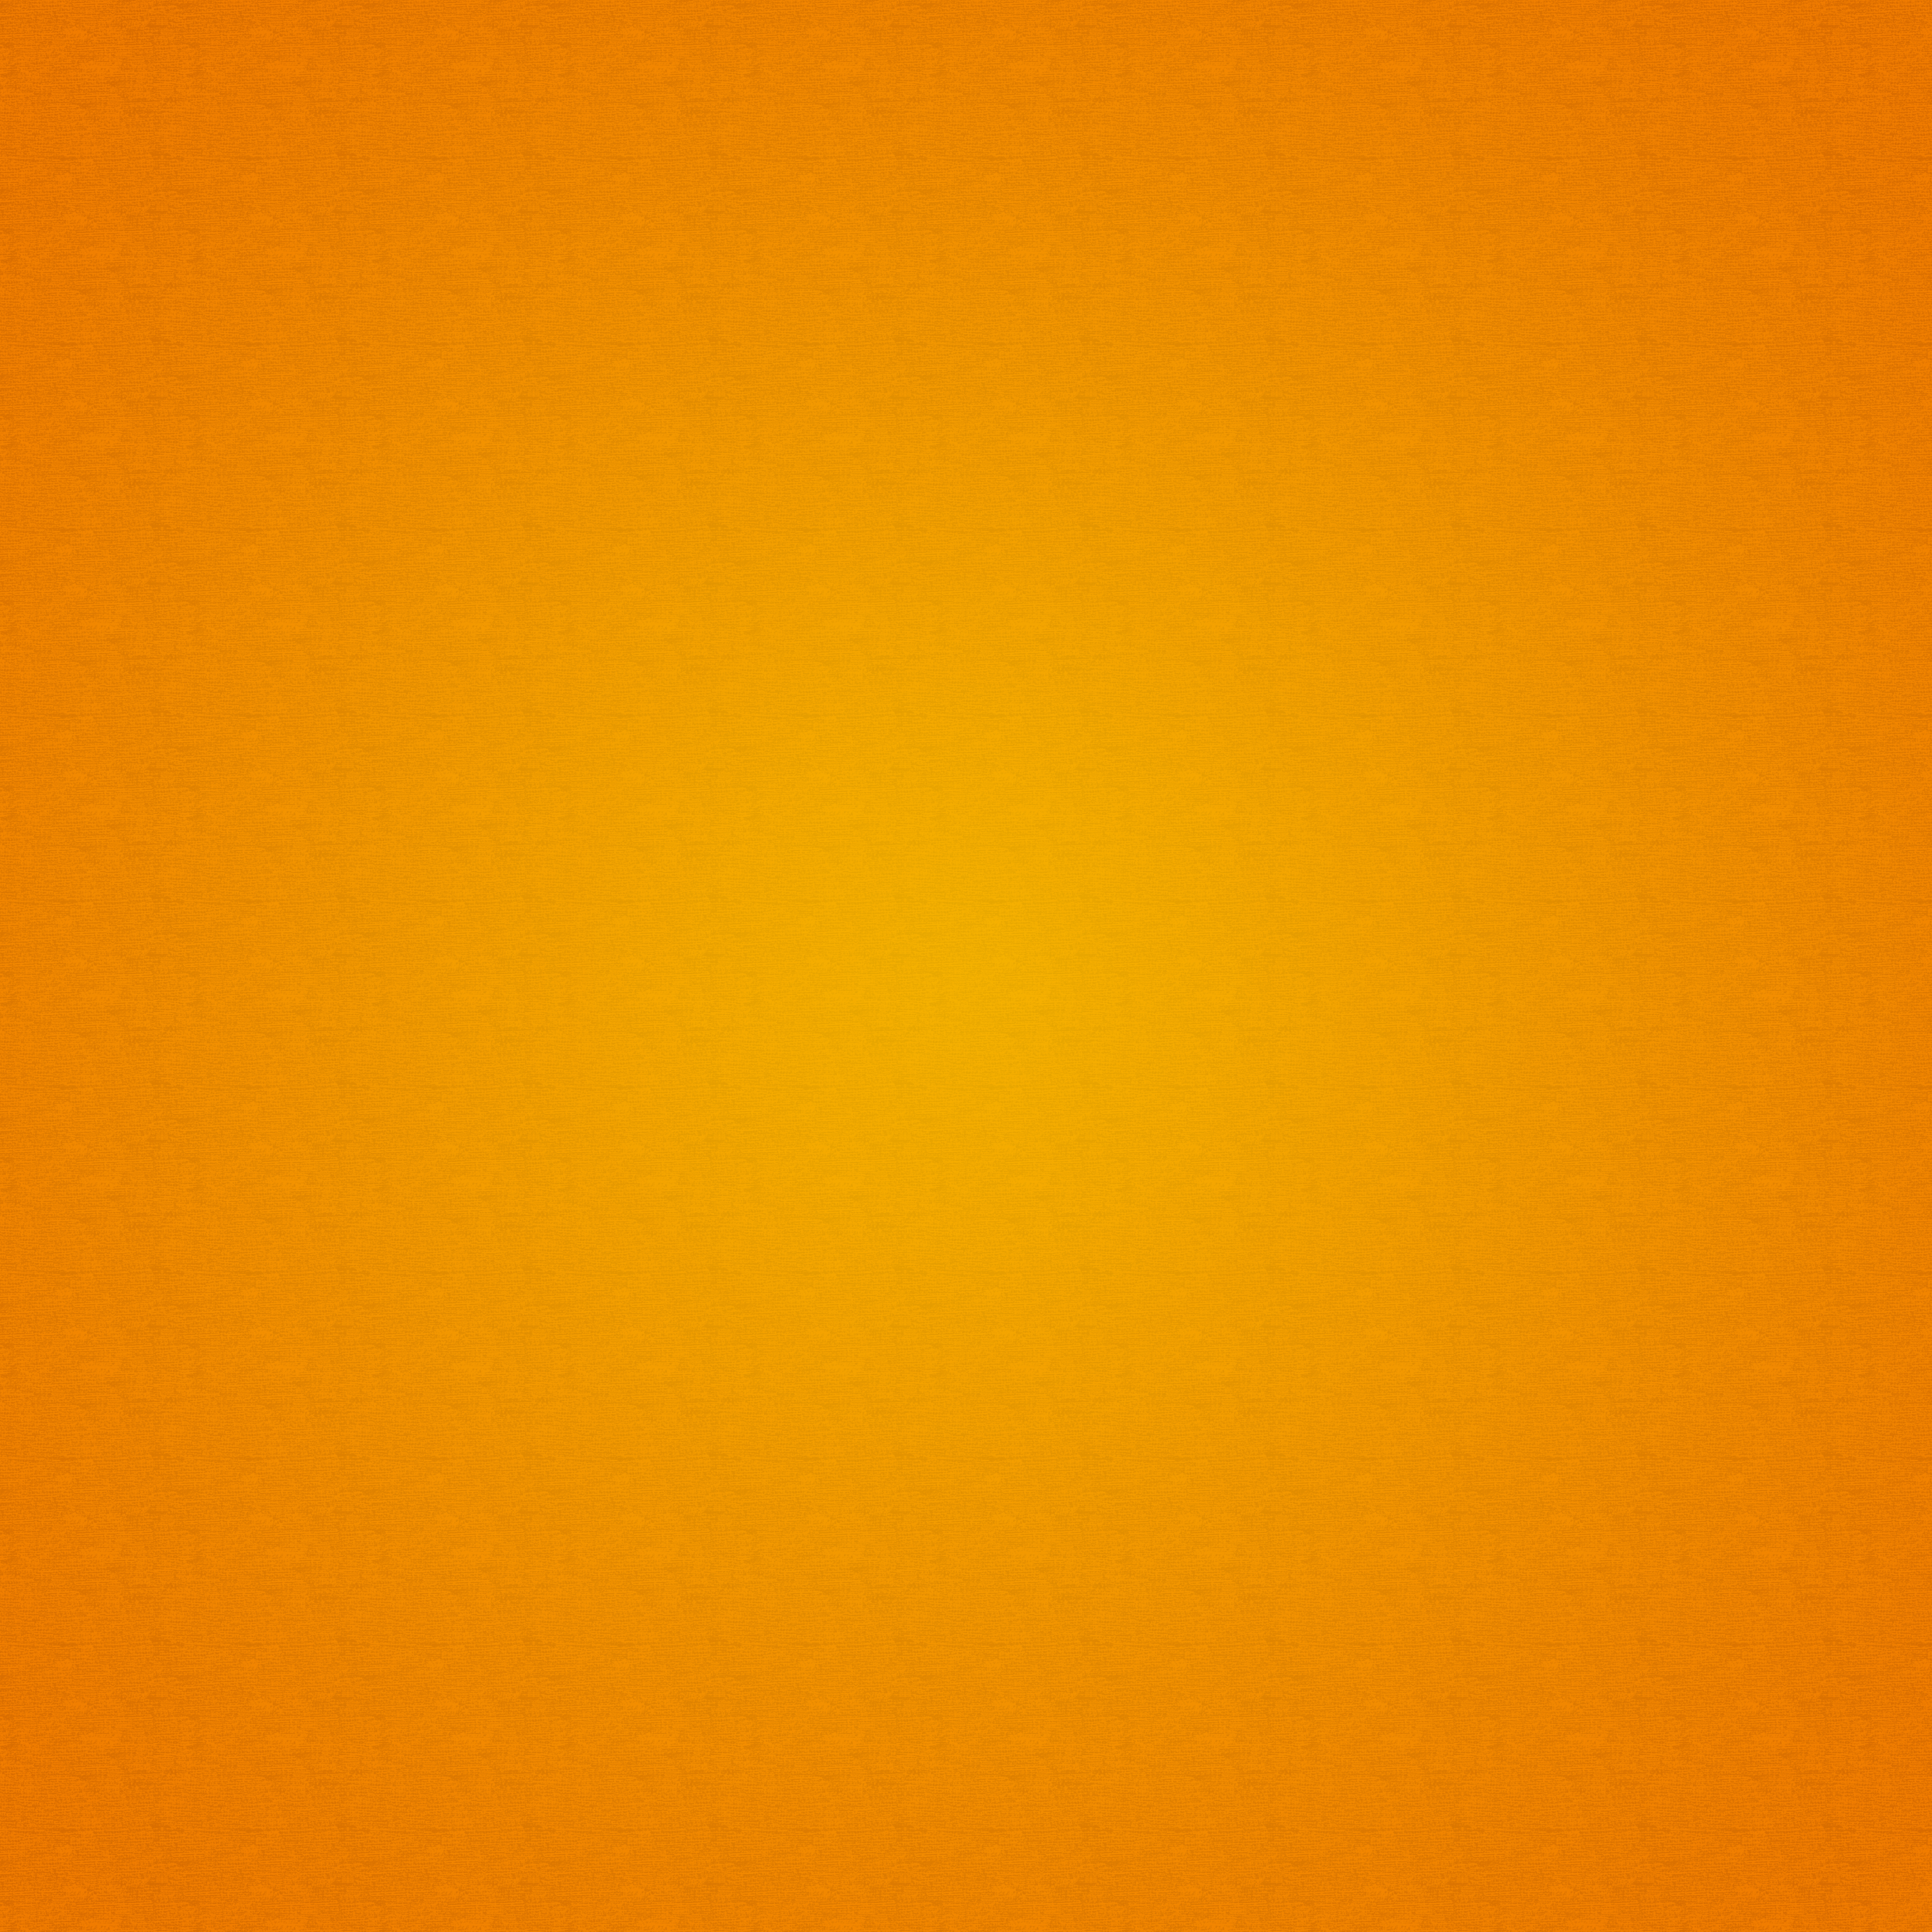 Скачать обои бесплатно Оранжевый, Желтый, Текстура, Фон, Текстуры картинка на рабочий стол ПК